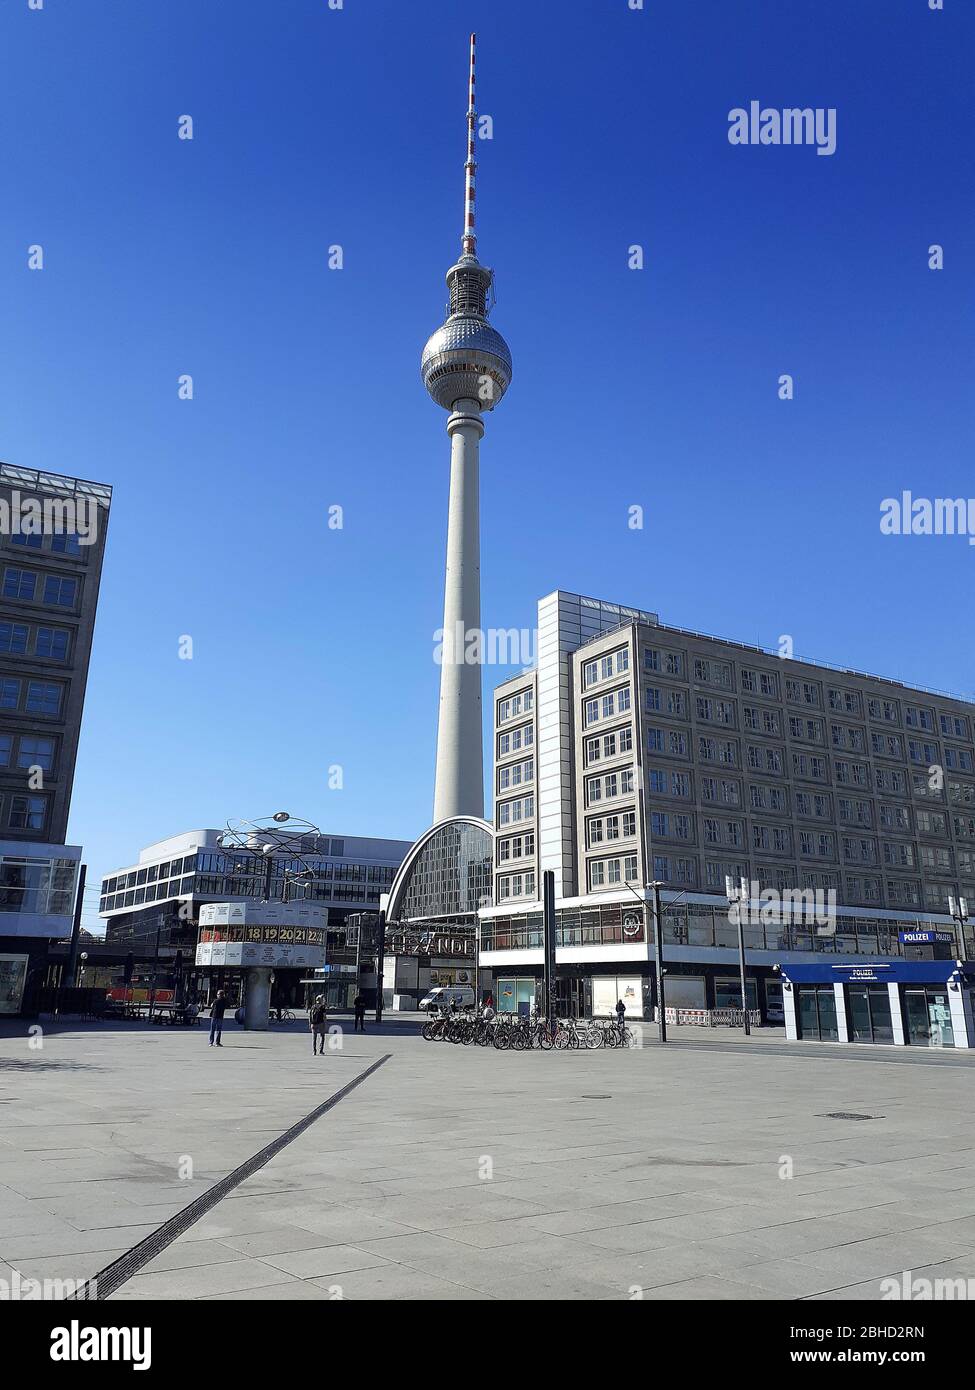 Ein verlassener Alexanderplatz mit der Weltzeituhr, meist Treffpunkt, während der Sperrung durch die Coronavirus-Pandemie, April 2020, Berlin, Deutschland Stockfoto